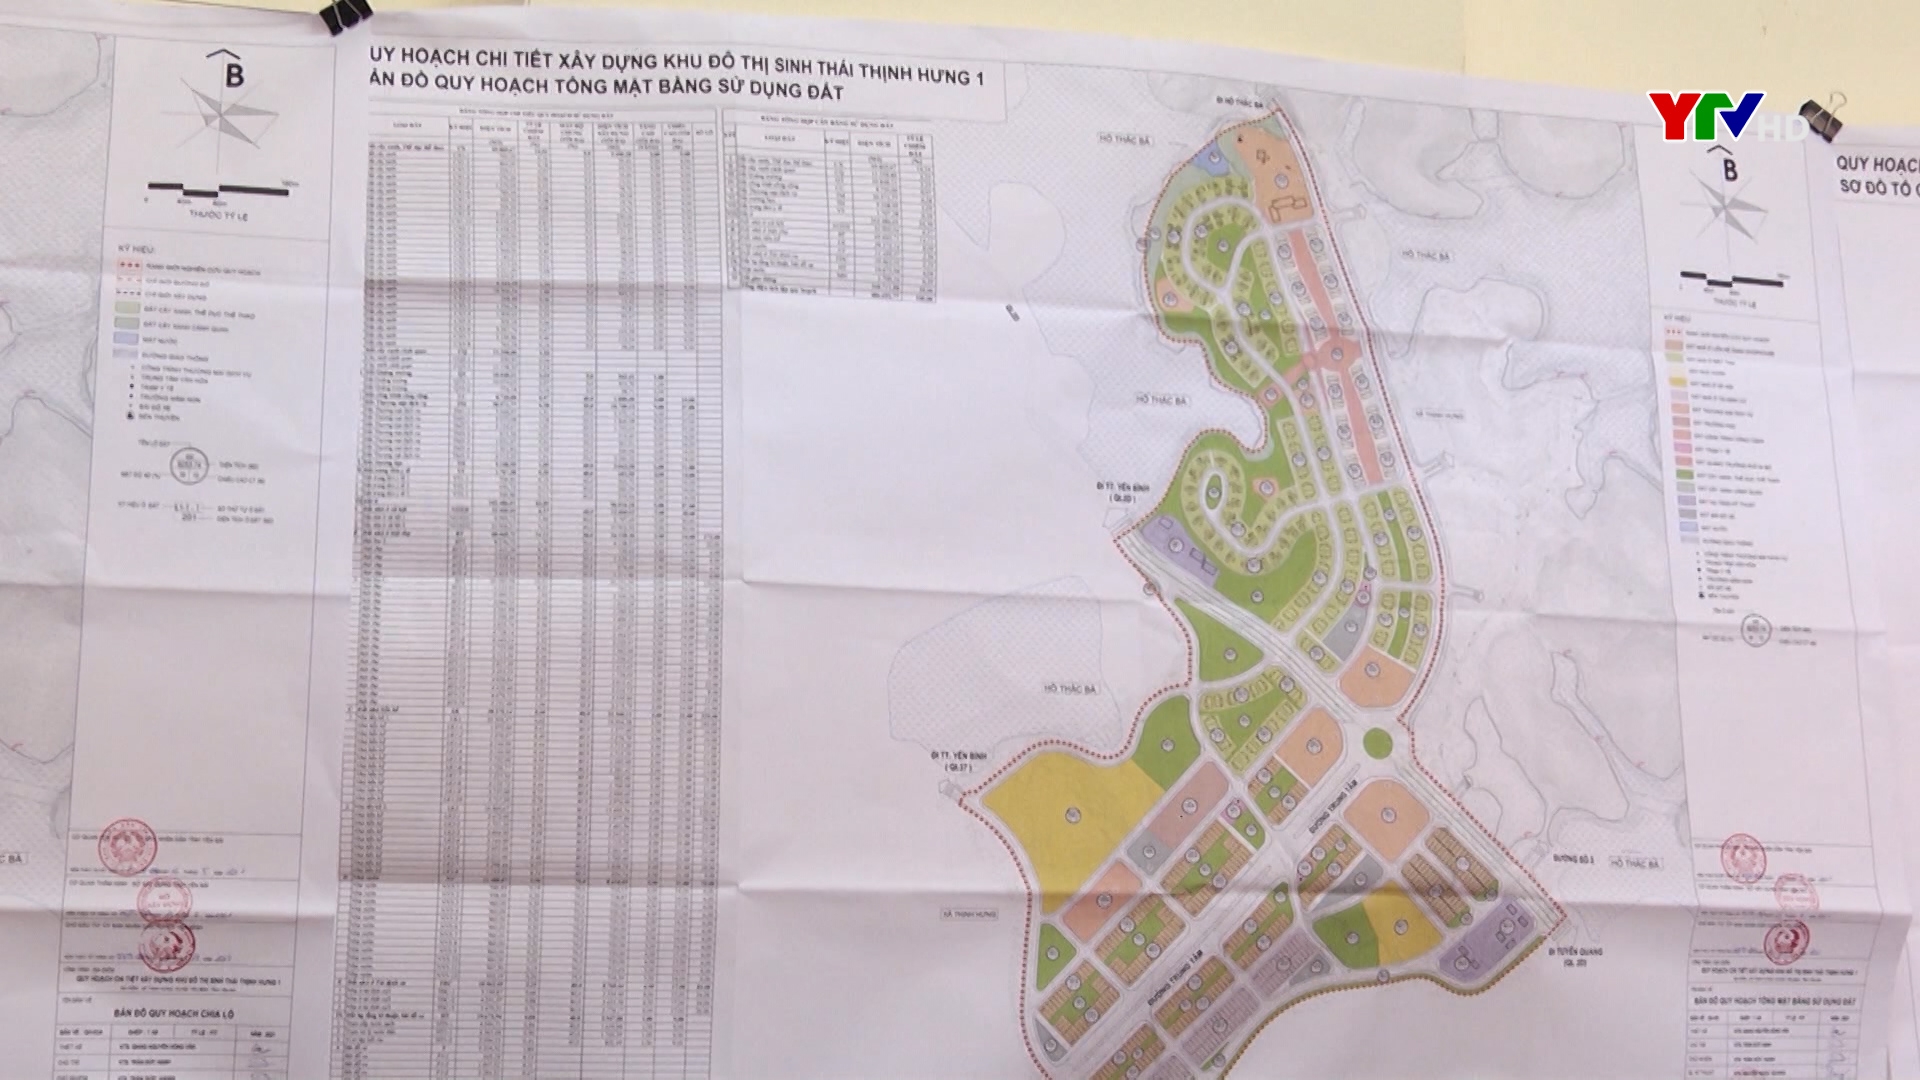 Hội nghị công bố Đồ án quy hoạch chi tiết xây dựng khu đô thị sinh thái tại xã Thịnh Hưng, huyện Yên Bình